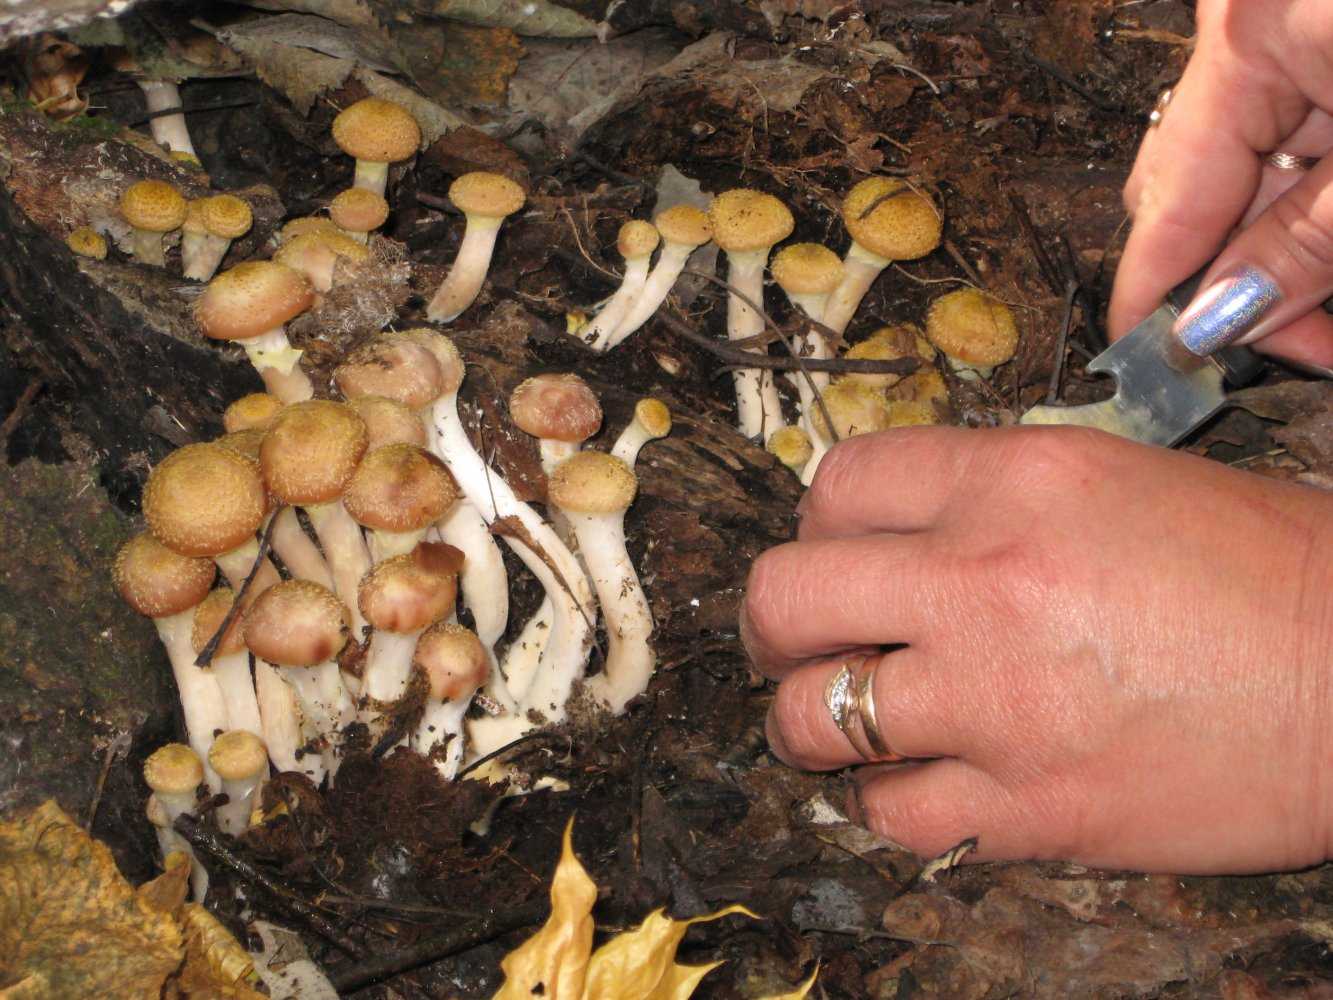 Опята в самаре: когда собирать и куда поехать за грибами в самарской области